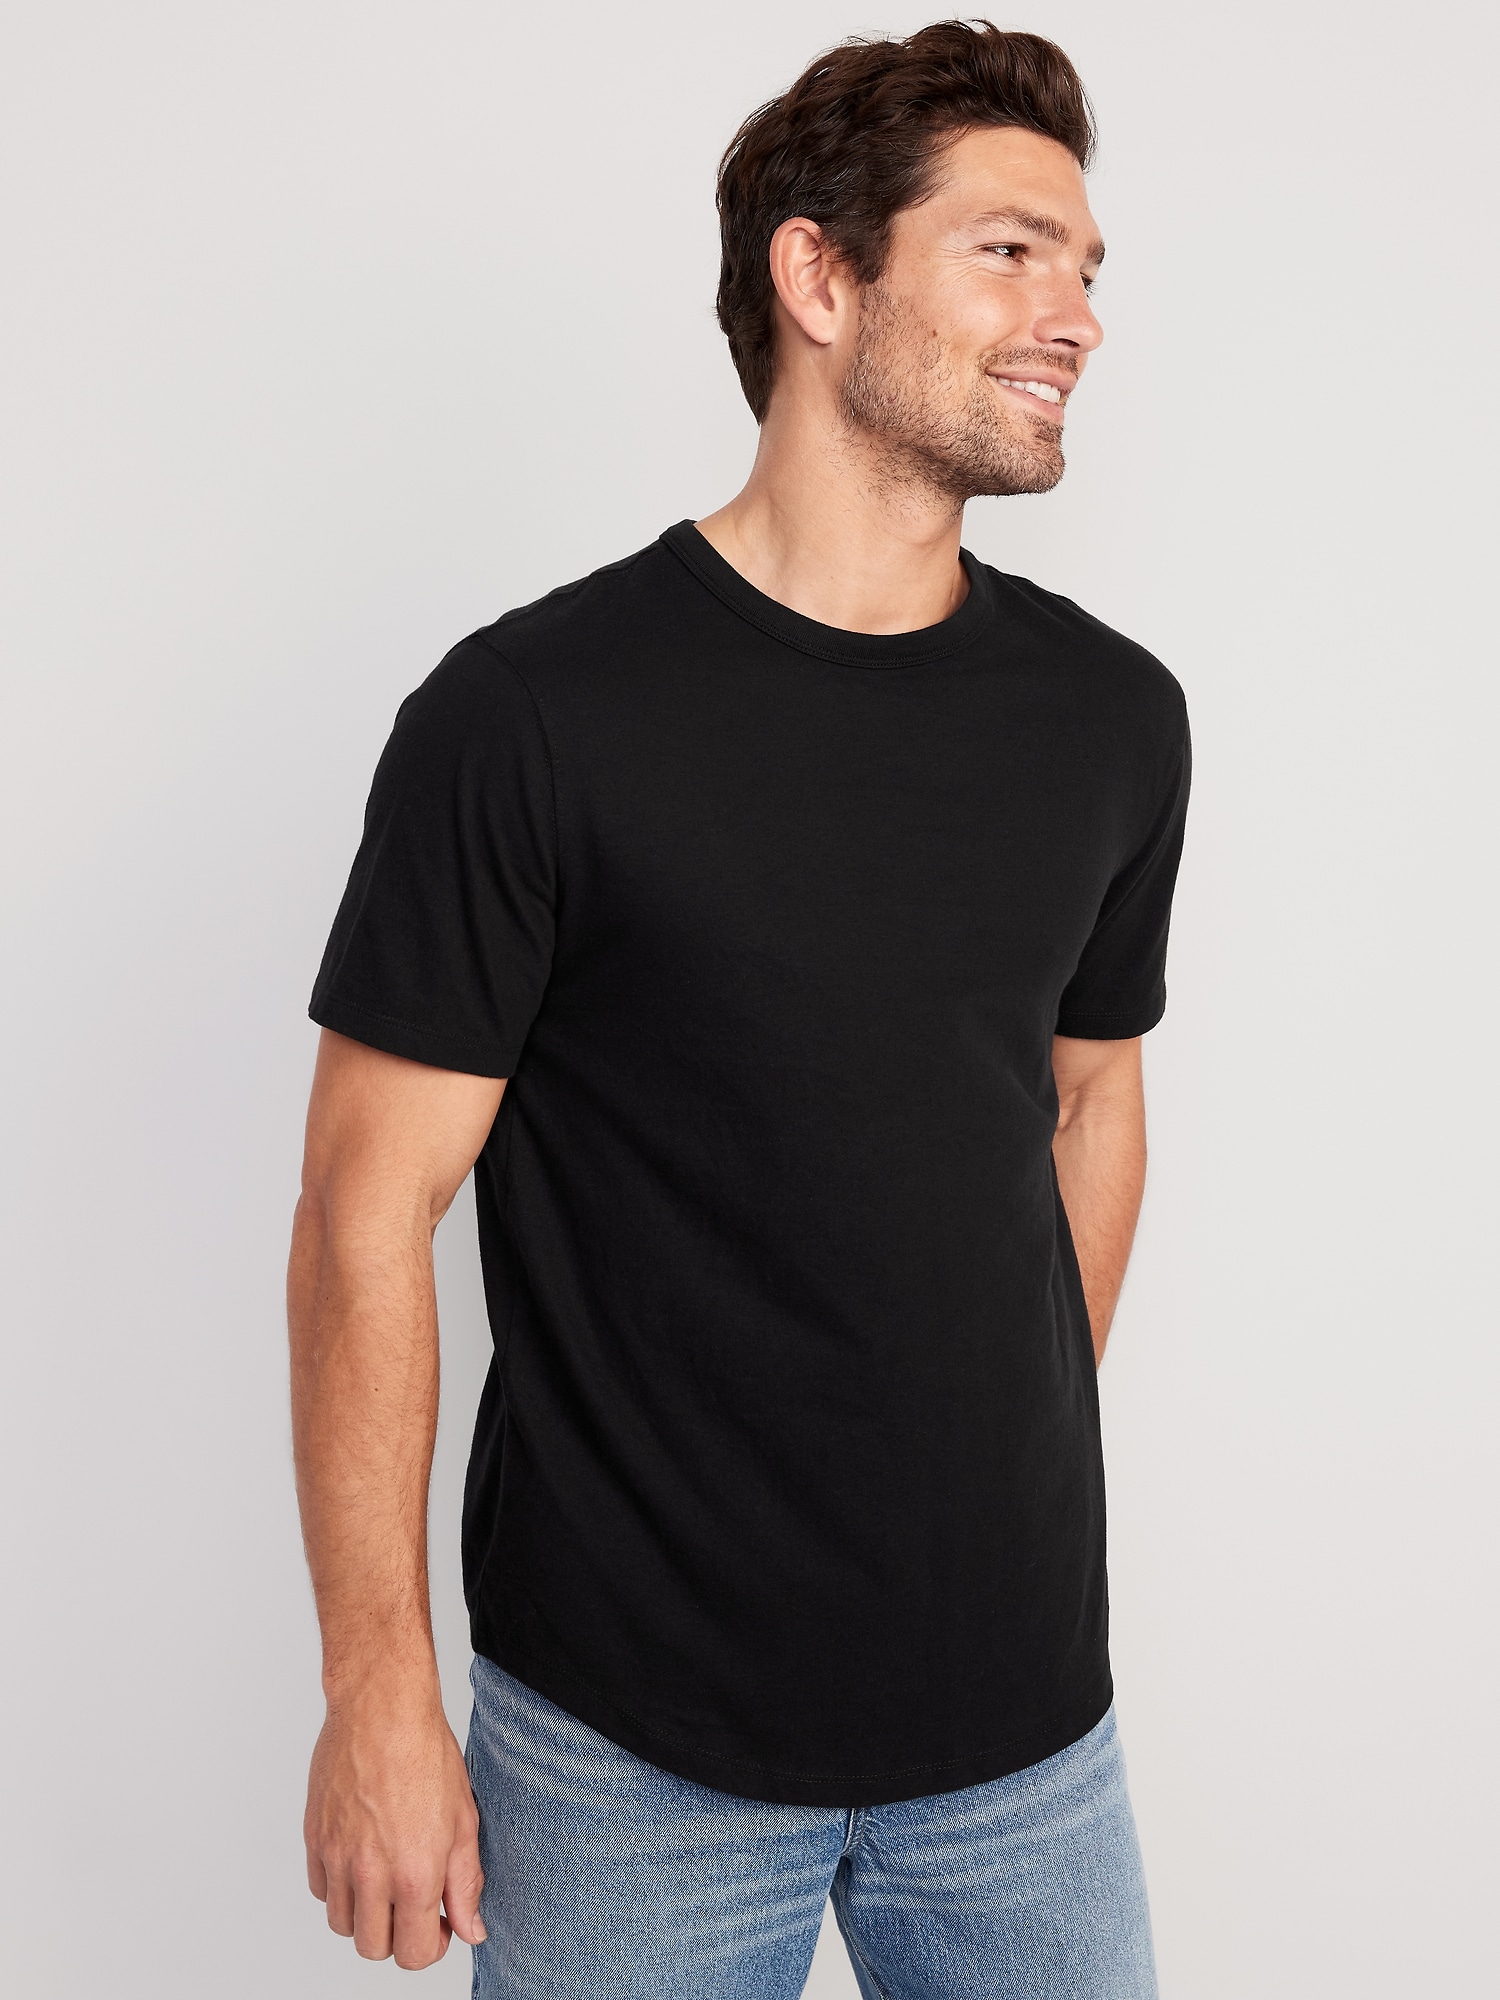 Old Navy Soft-Washed Curved-Hem T-Shirt for Men black. 1